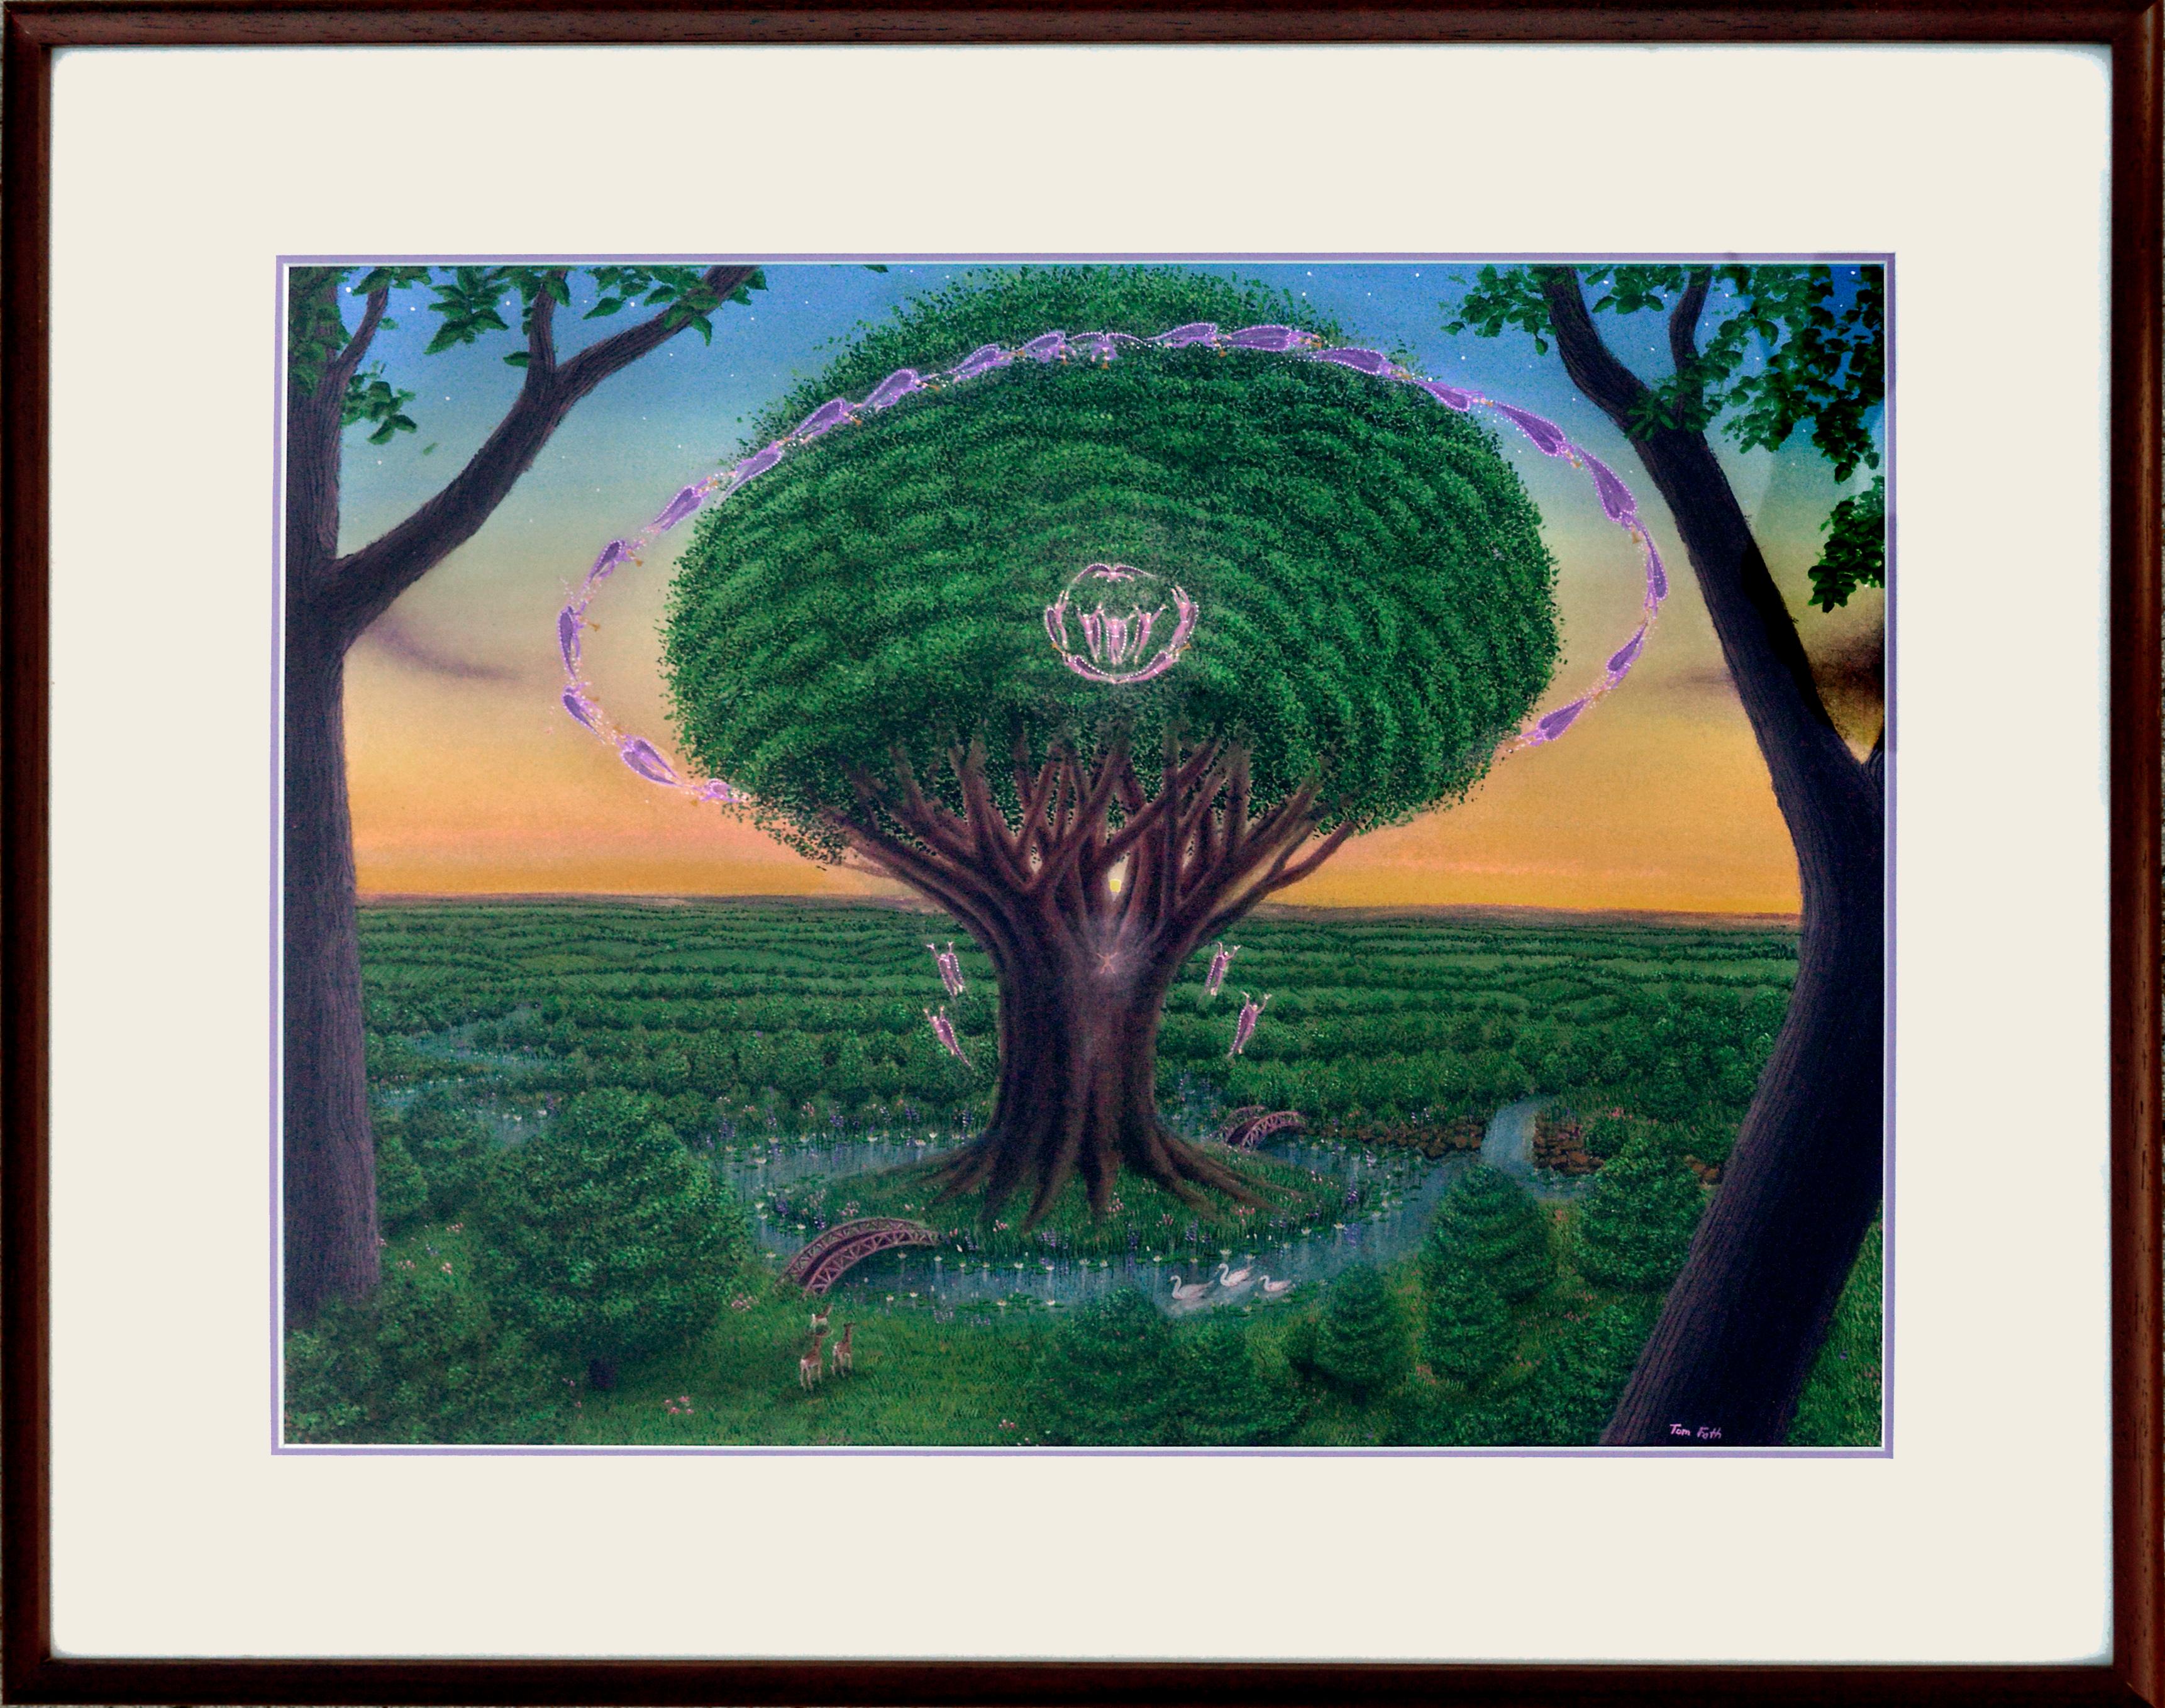 Baum des Lebens im Garten – Visionäre Kunst von Tom Fath